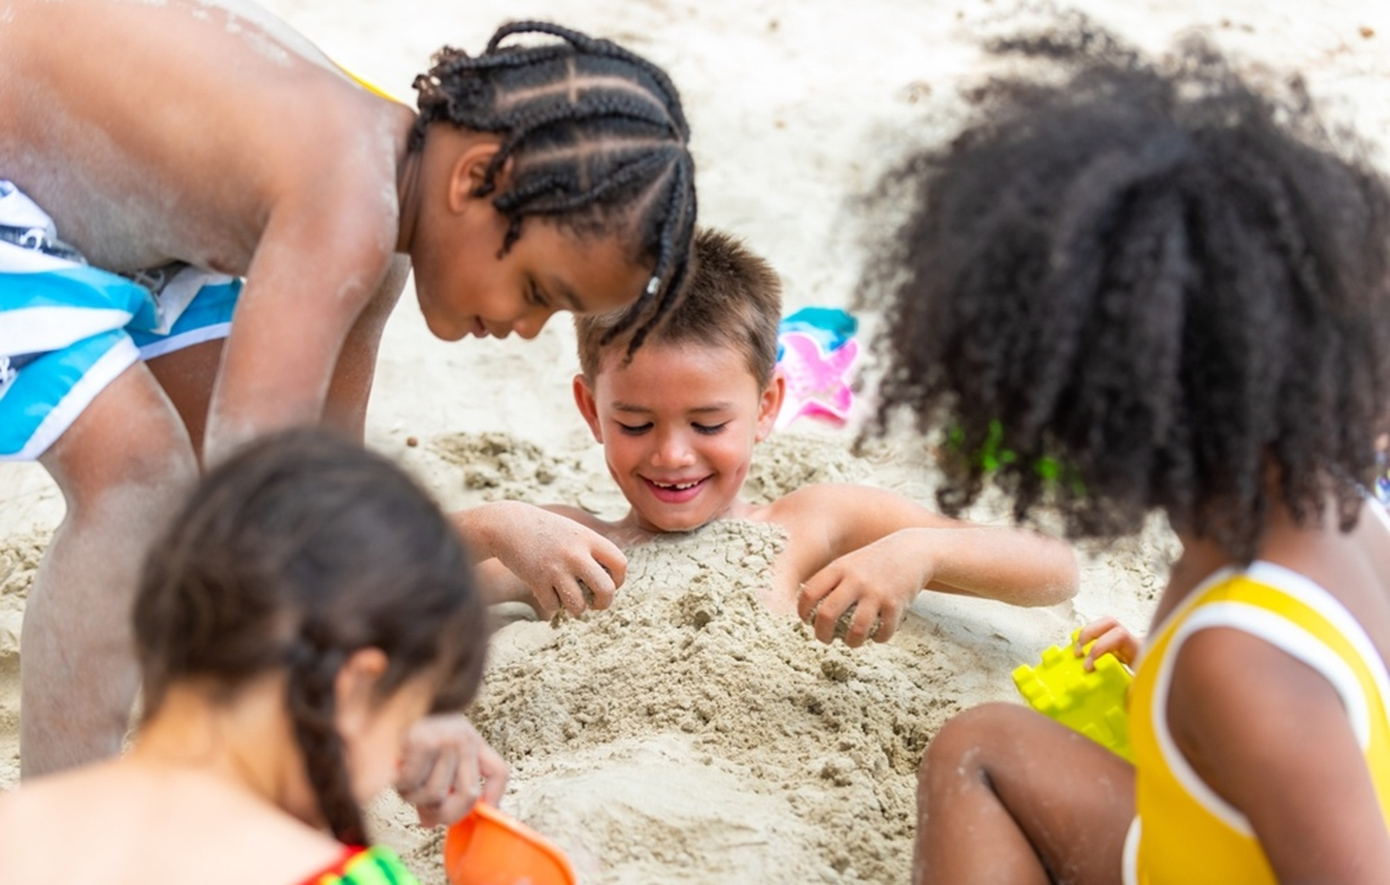 Παιδιά και παραλία: Από ποιες μολύνσεις κινδυνεύουν;